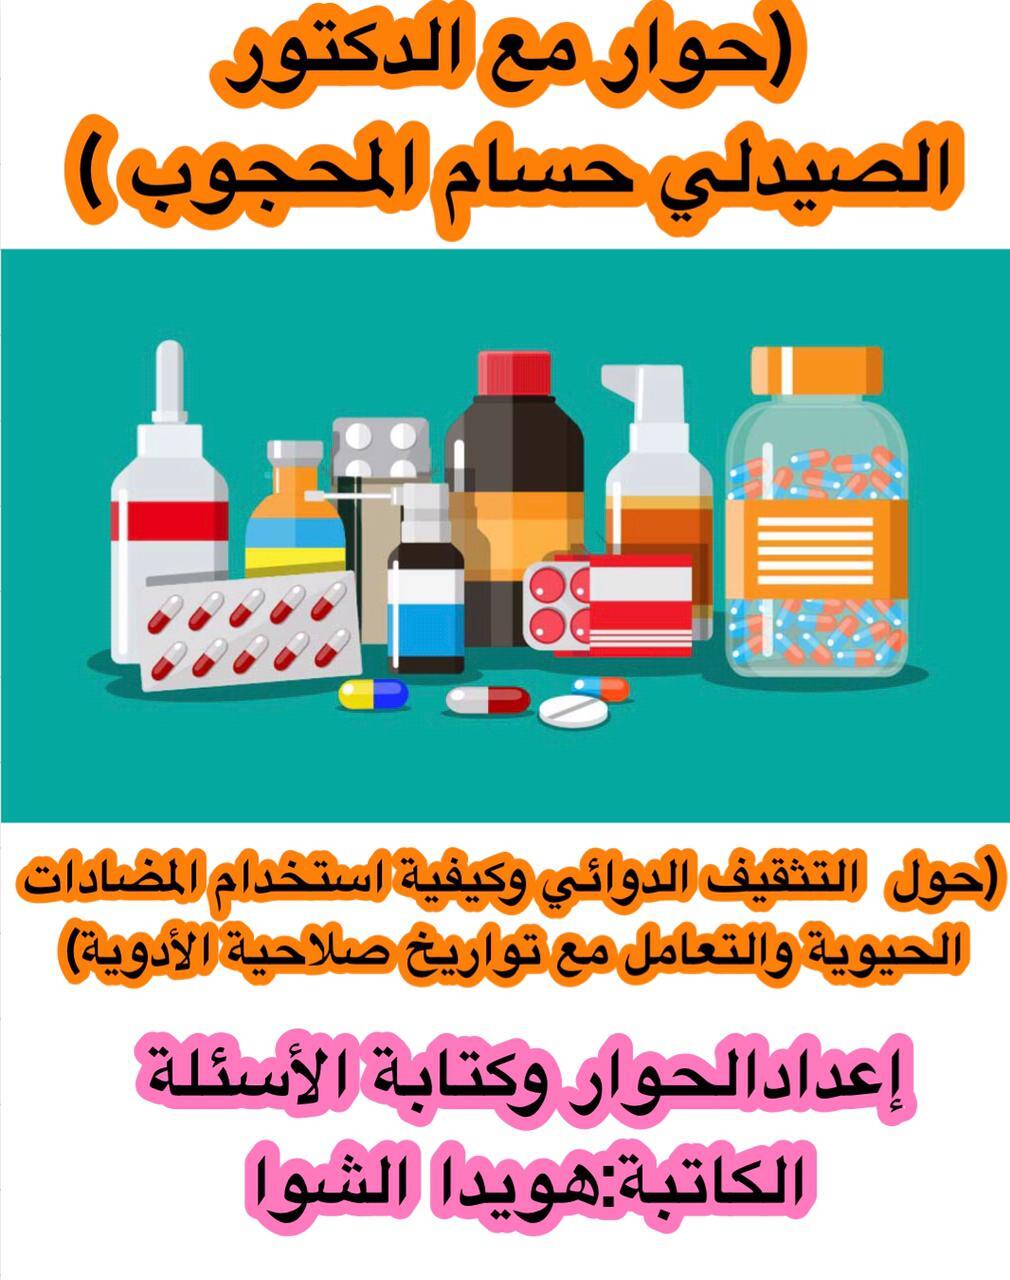 (حوار مع الدكتور  الصيدلي / حسام المحجوب حول التثقيف الدوائي وكيفية استخدام المضادات الحيوية والتعامل مع تواريخ صلاحية الأدوية  )